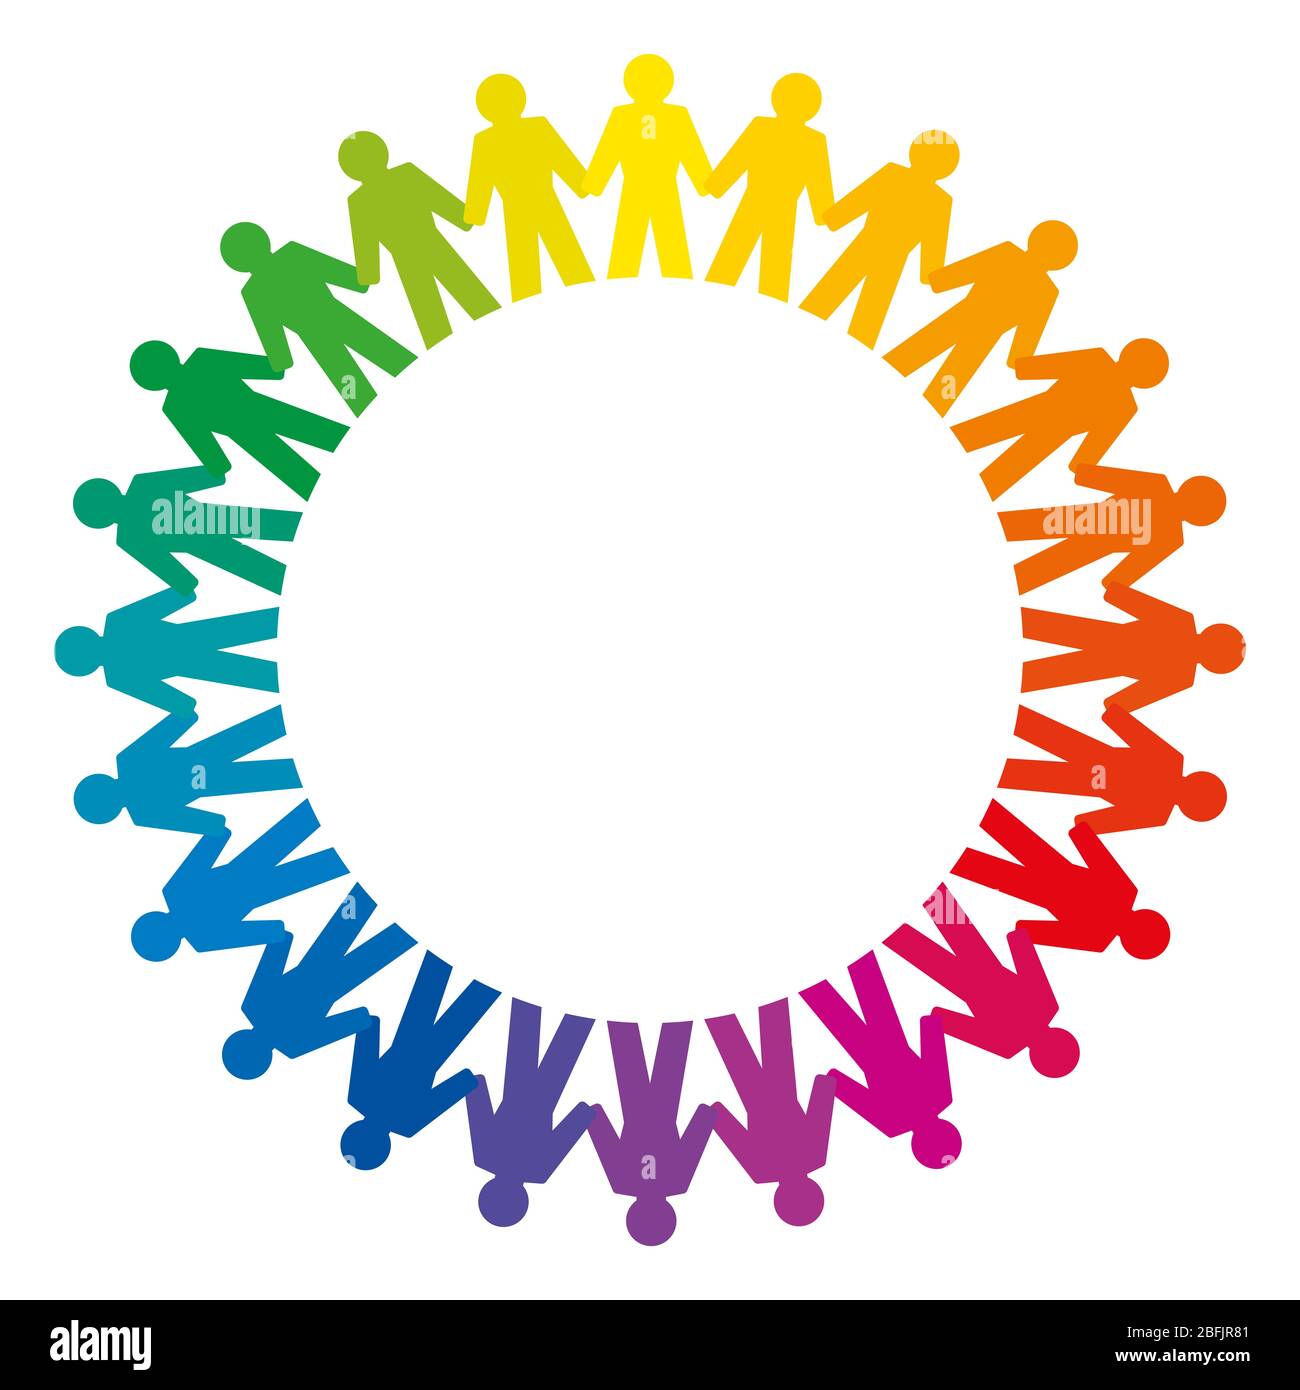 Menschen halten Hände bilden einen großen Regenbogen Kreis. Abstraktes Symbol der verbundenen Menschen, die einen Kreis stehen, um Freundschaft, Liebe und Harmonie auszudrücken. Stockfoto